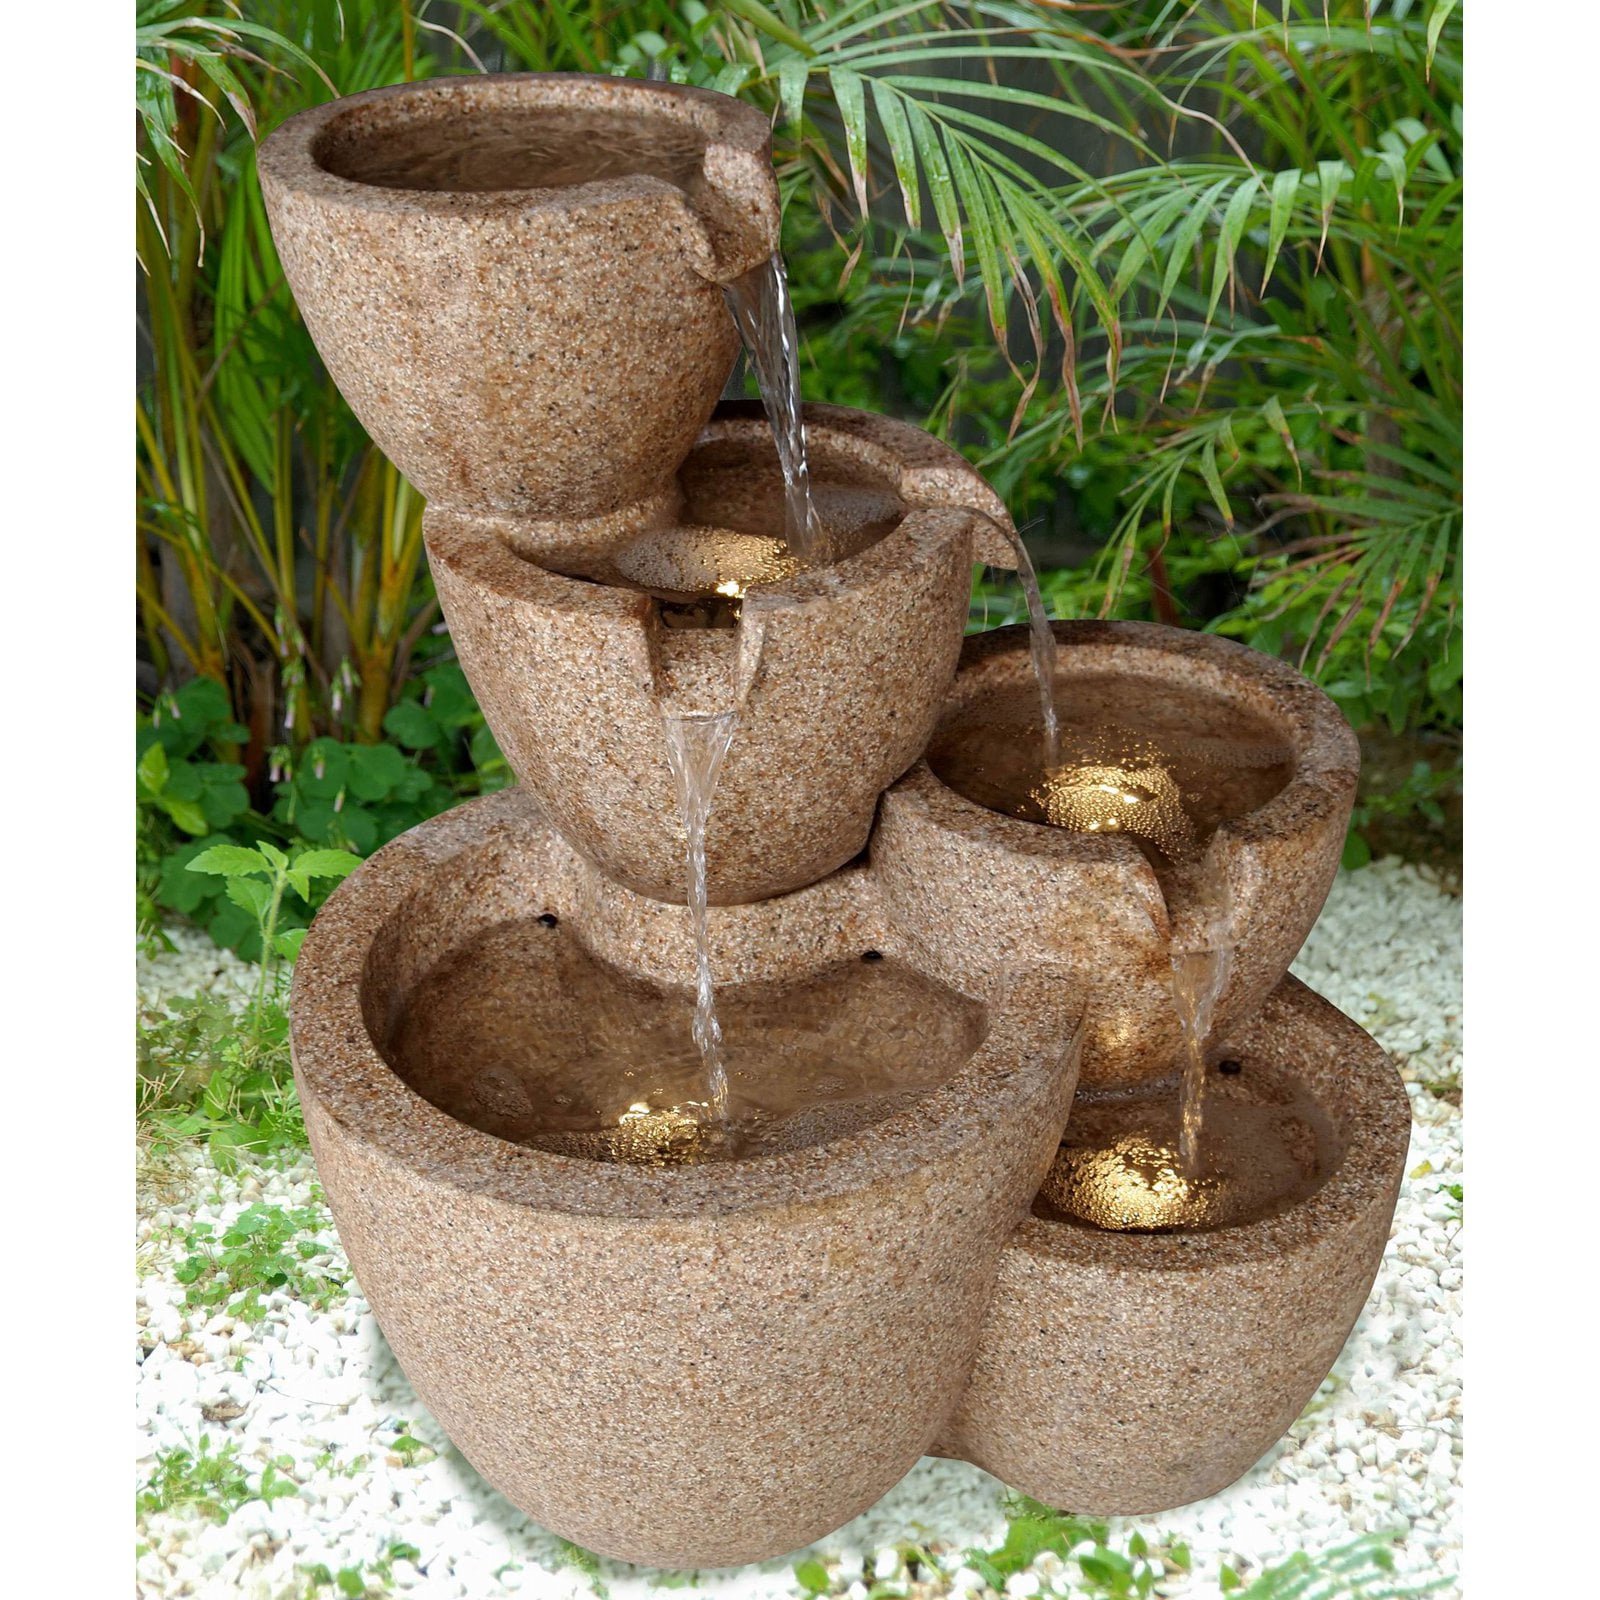 Jeco Multi Pots Sandstone Outdoor / Indoor Water Outdoor Fountain with